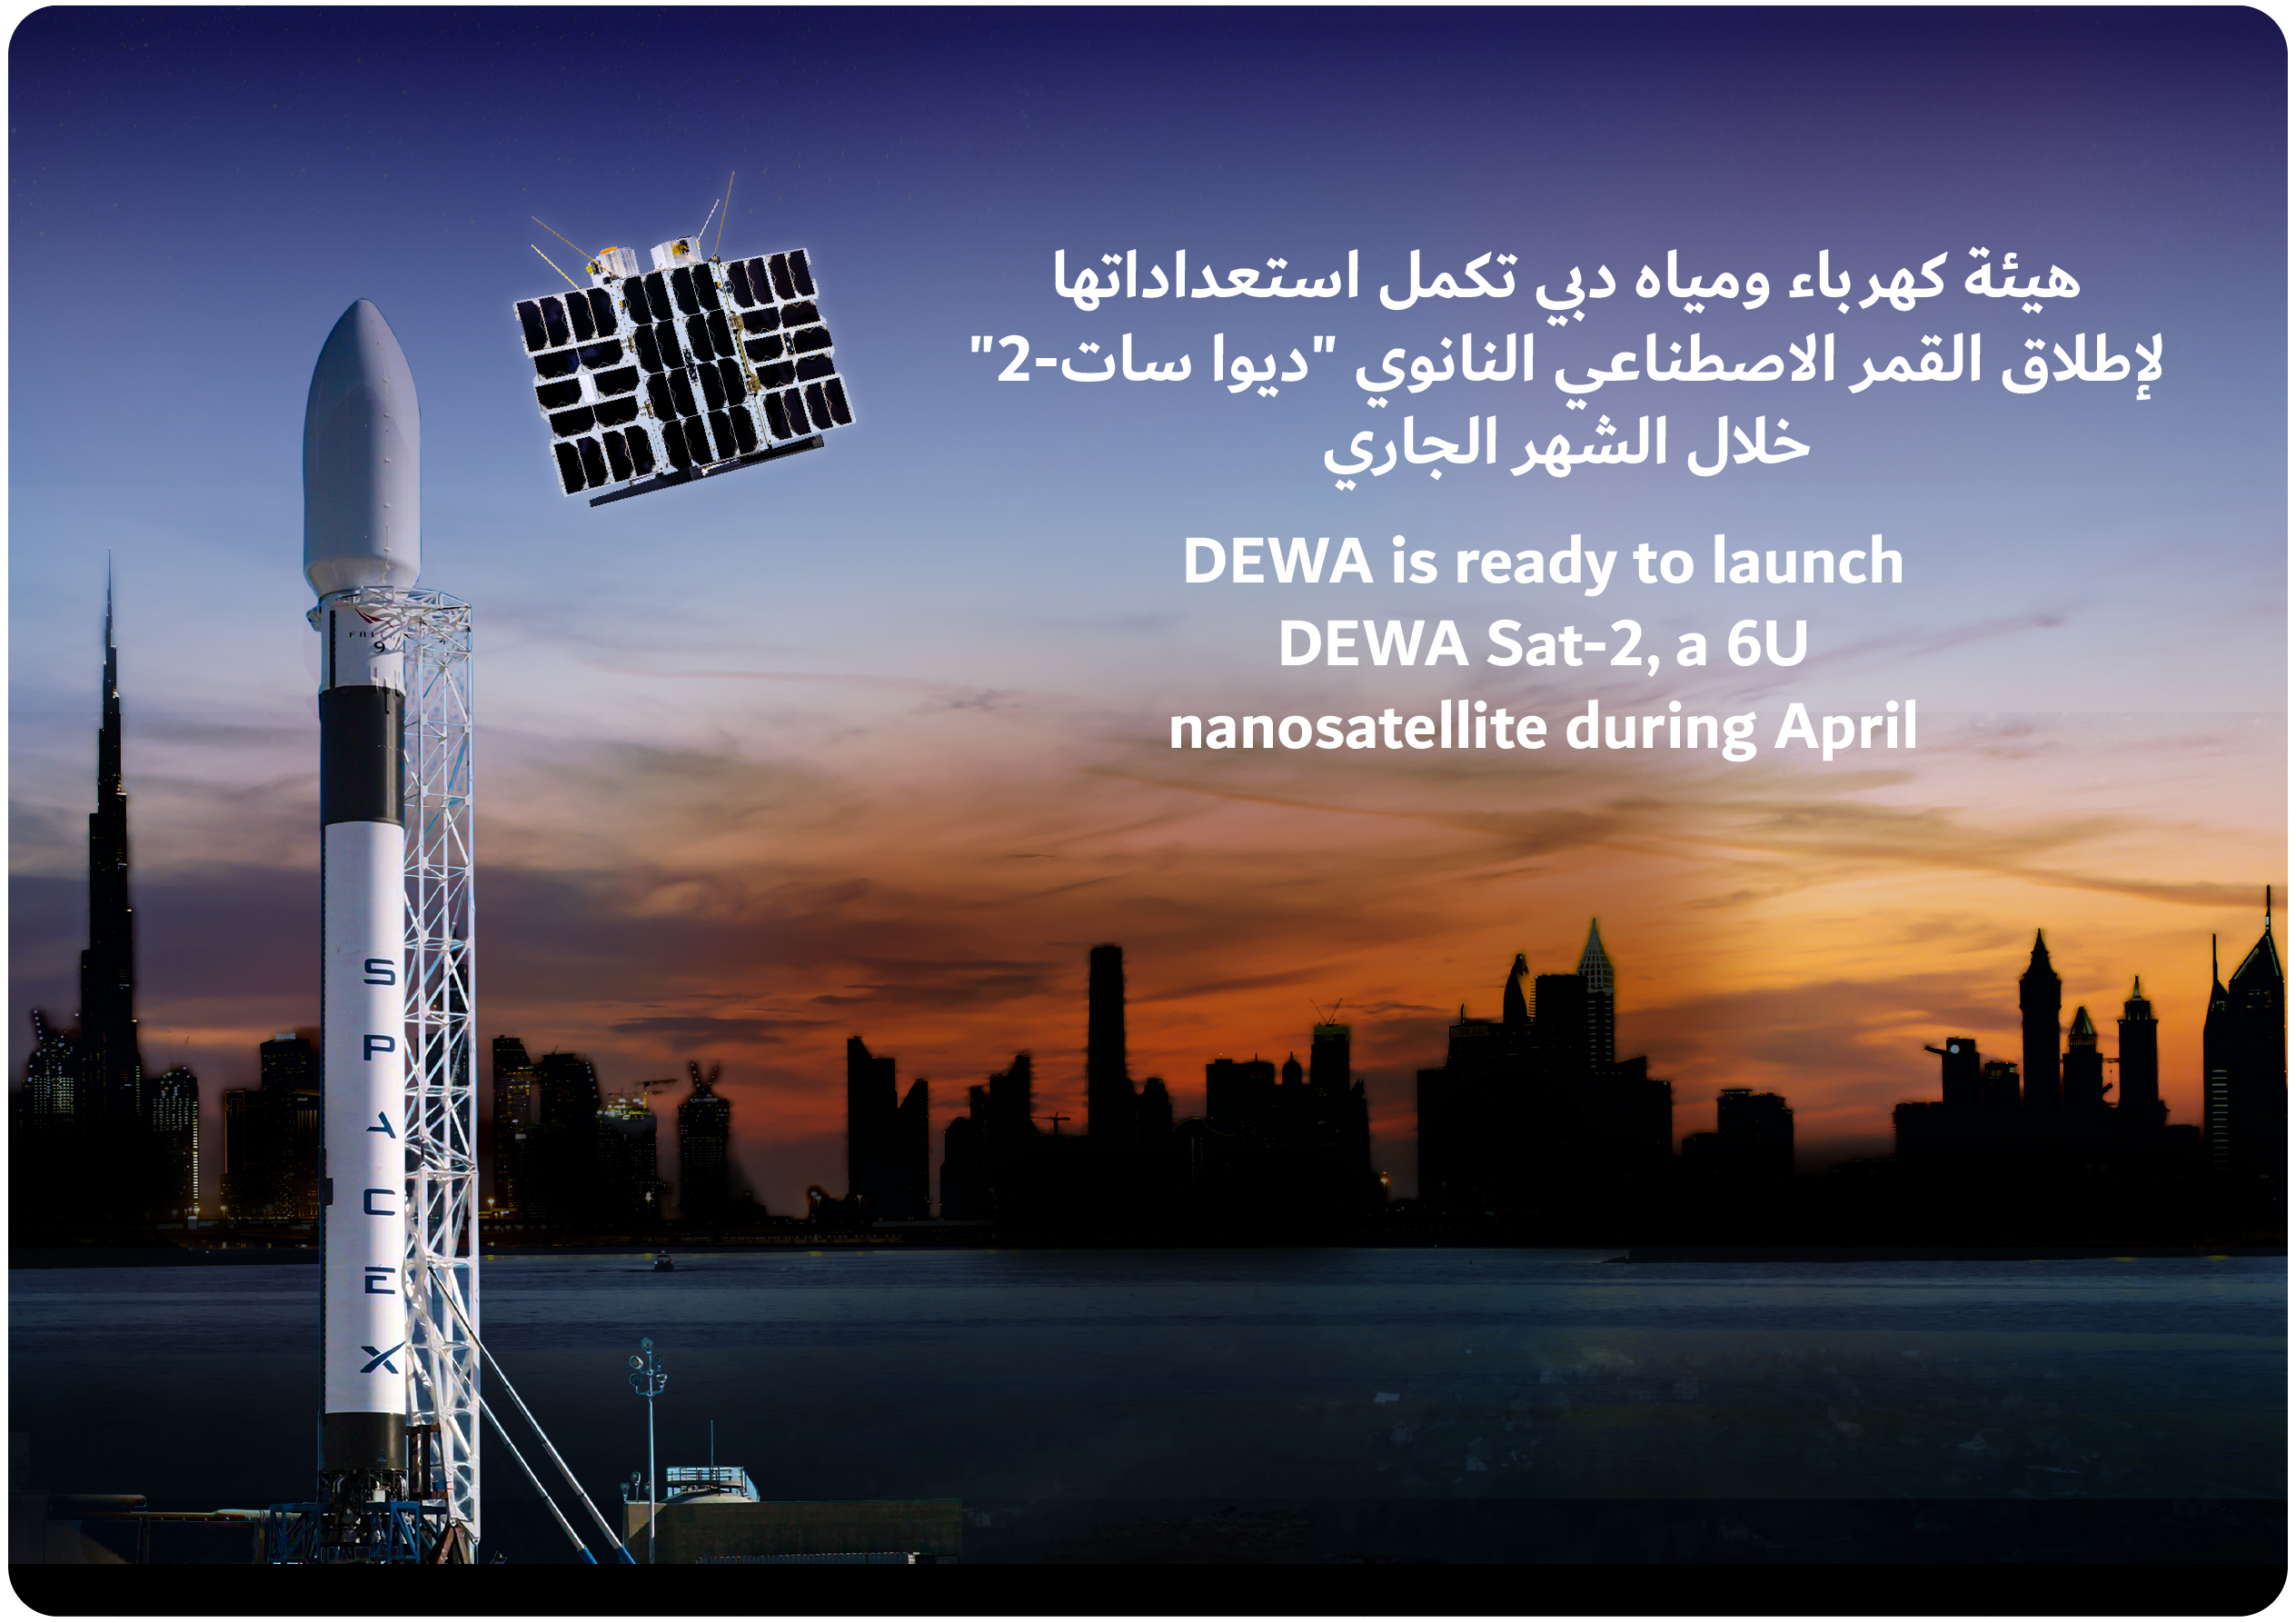 هيئة كهرباء ومياه دبي مستعدة لإطلاق القمر الصناعي النانوي DEWA Sat-2 خلال شهر أبريل